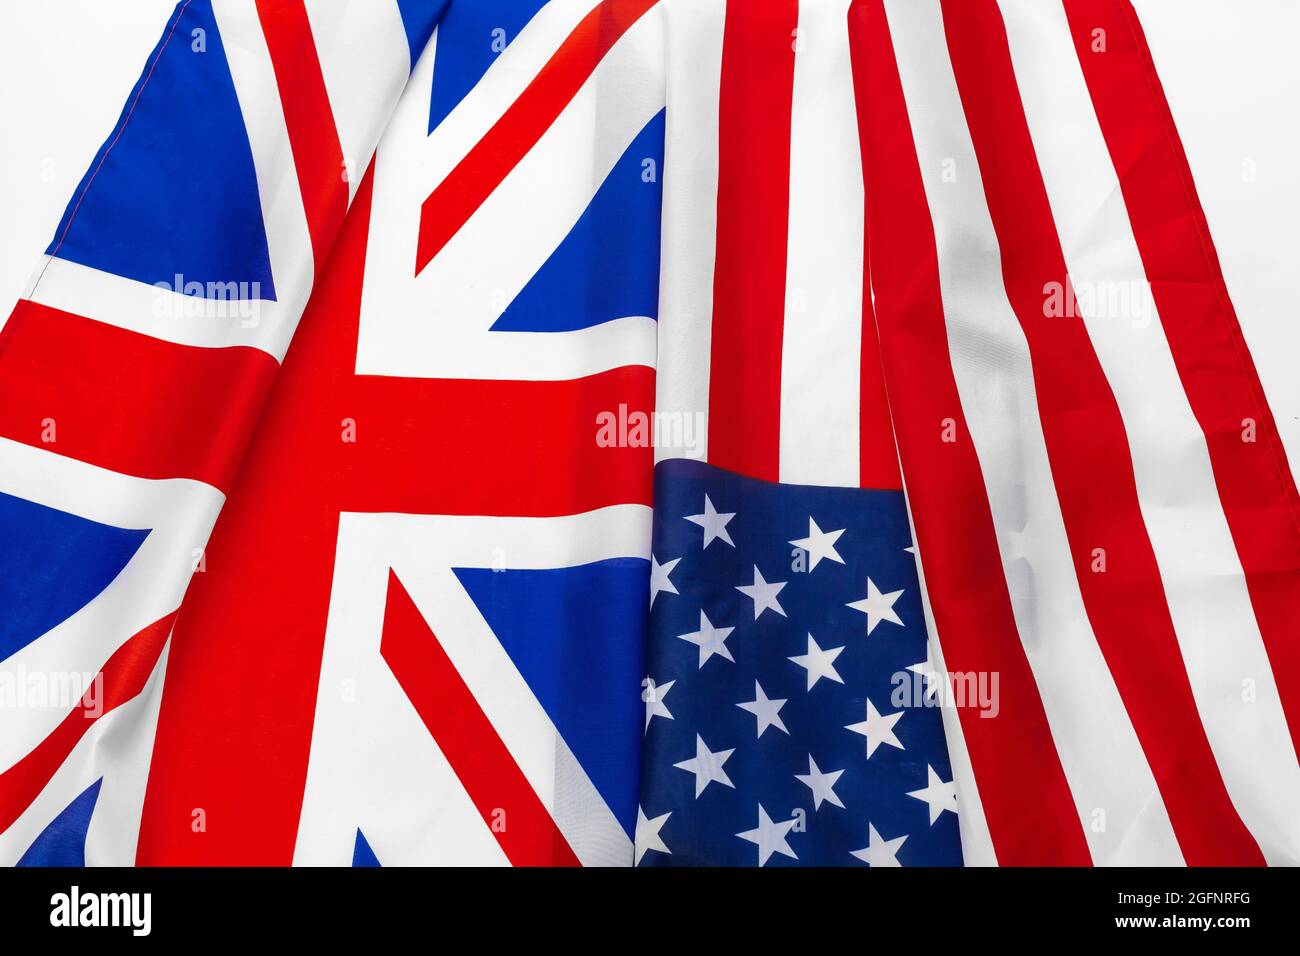 Die Flaggen der USA und die britische Union Jack Flagge winken zusammen  Stockfotografie - Alamy